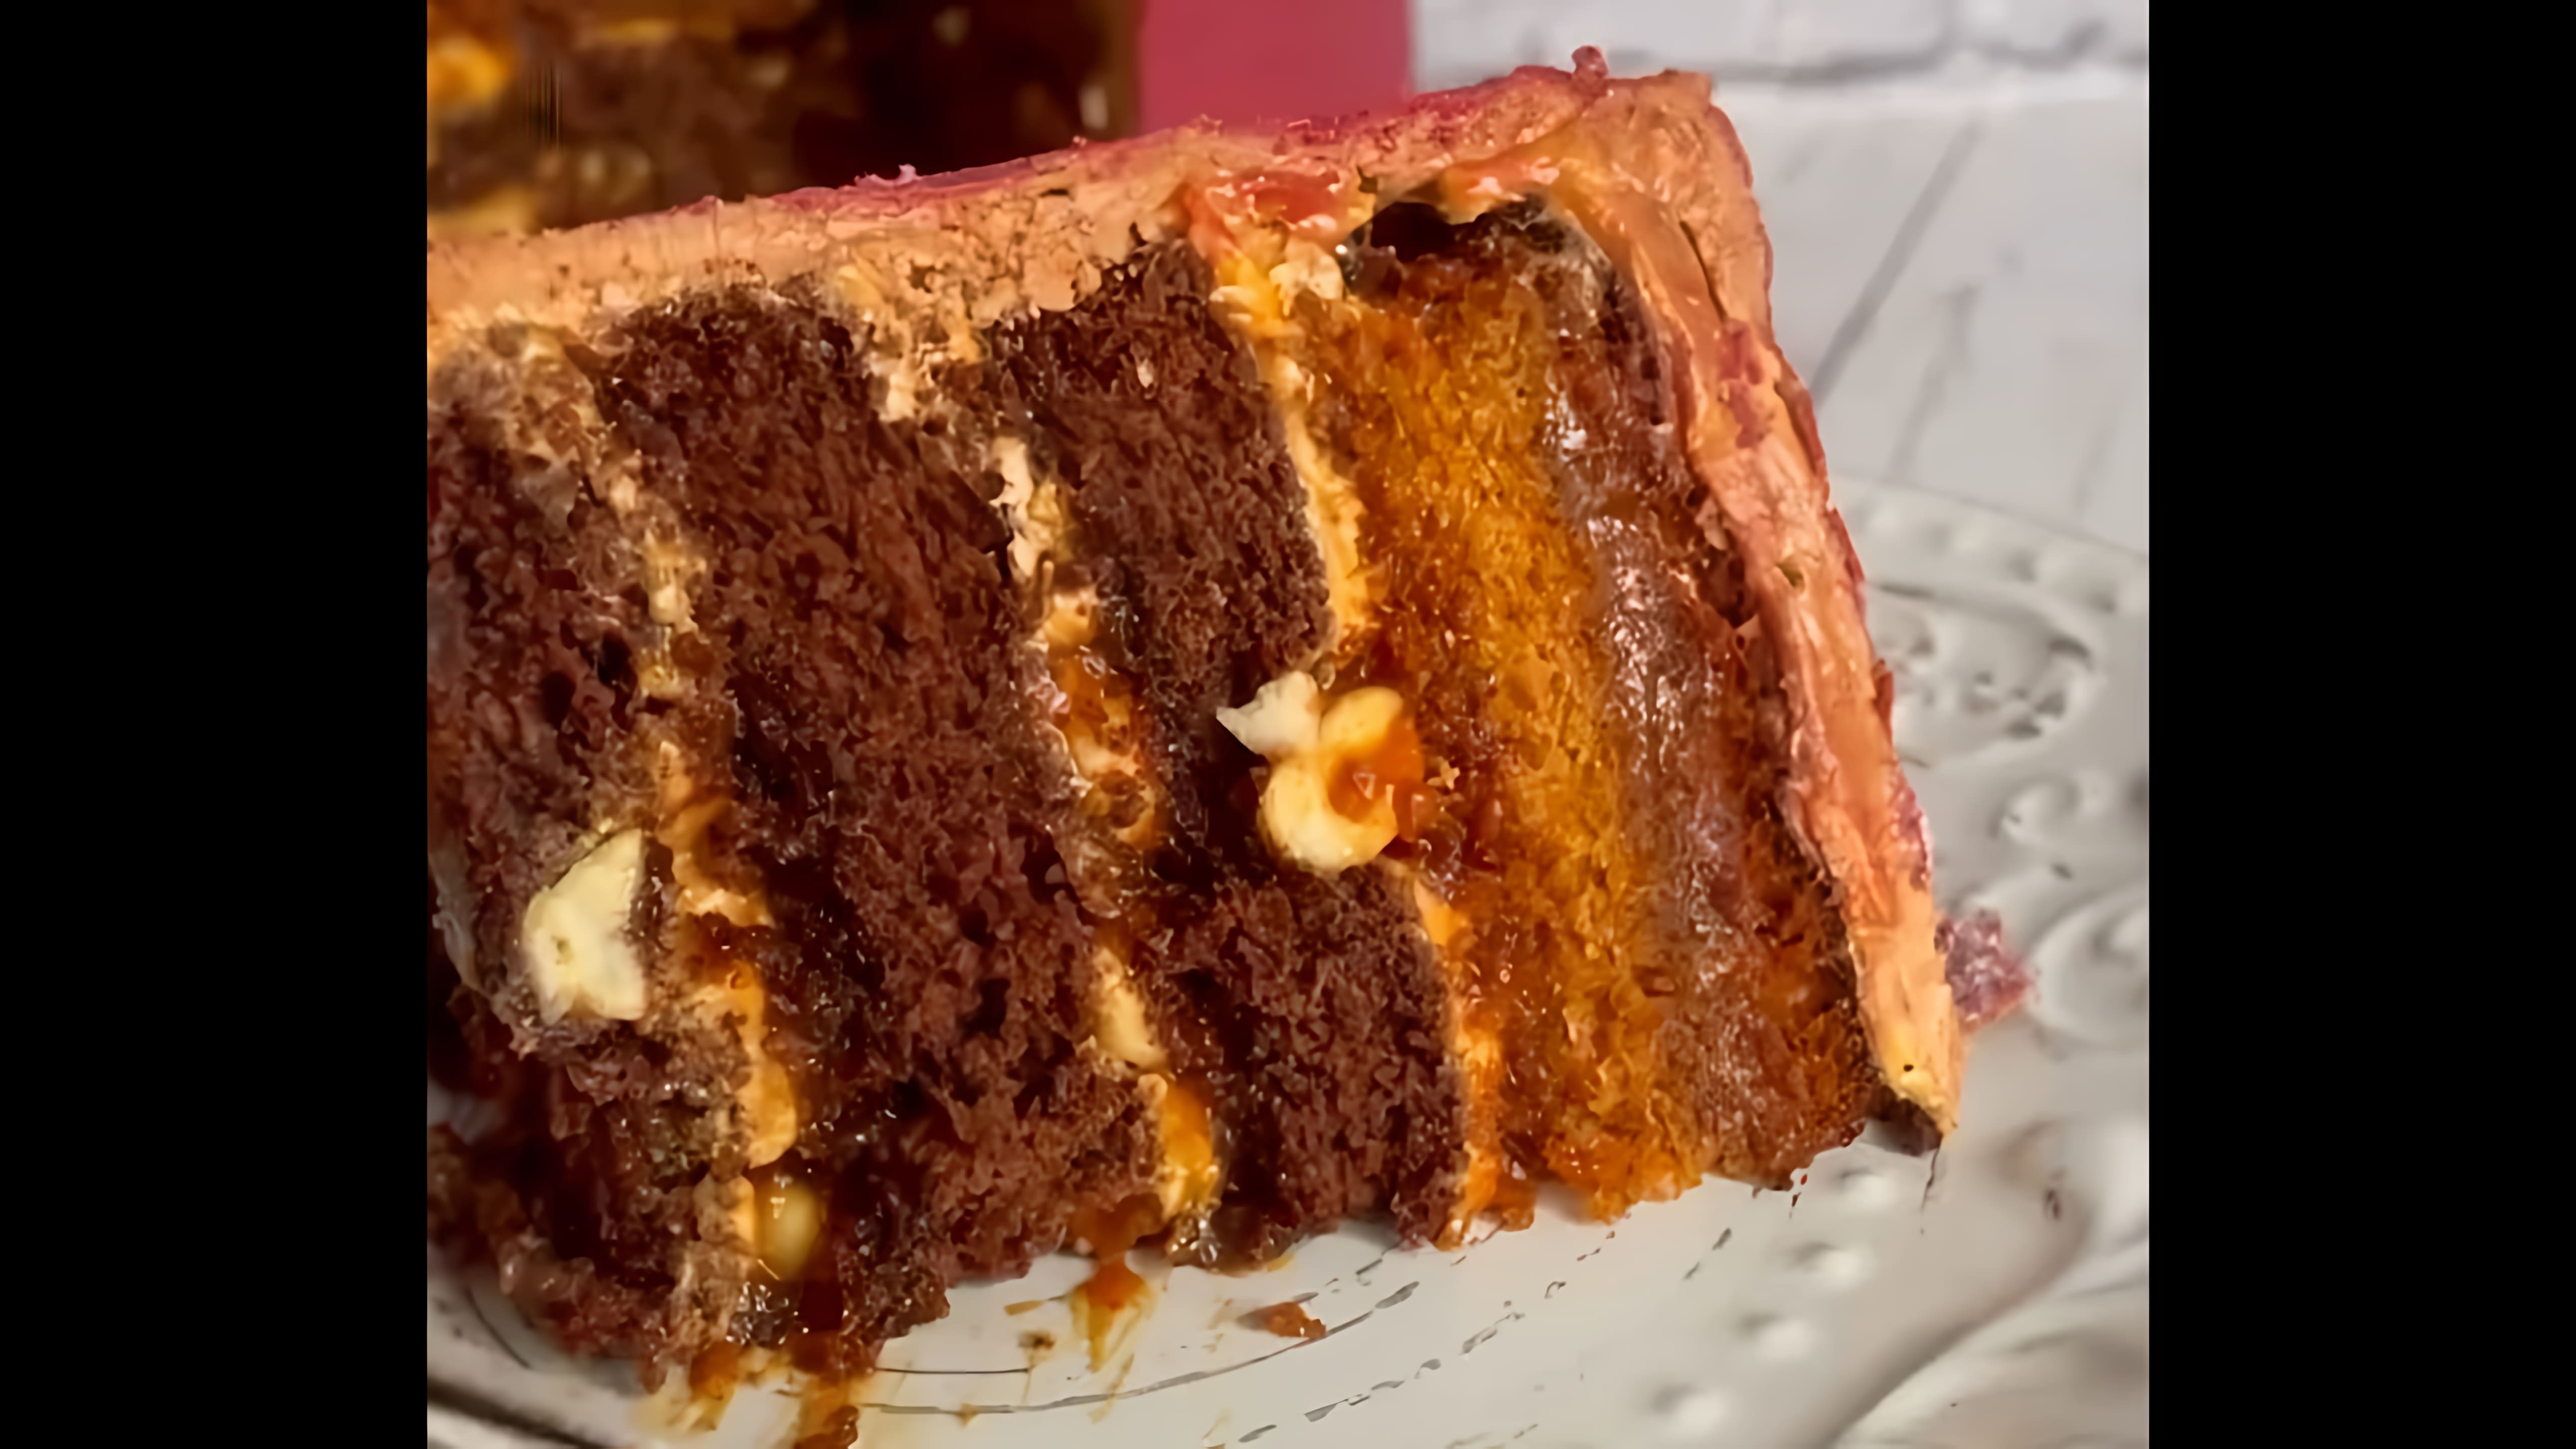 В этом видео демонстрируется рецепт шоколадно-орехового торта с кремом из вареной сгущенки и масла